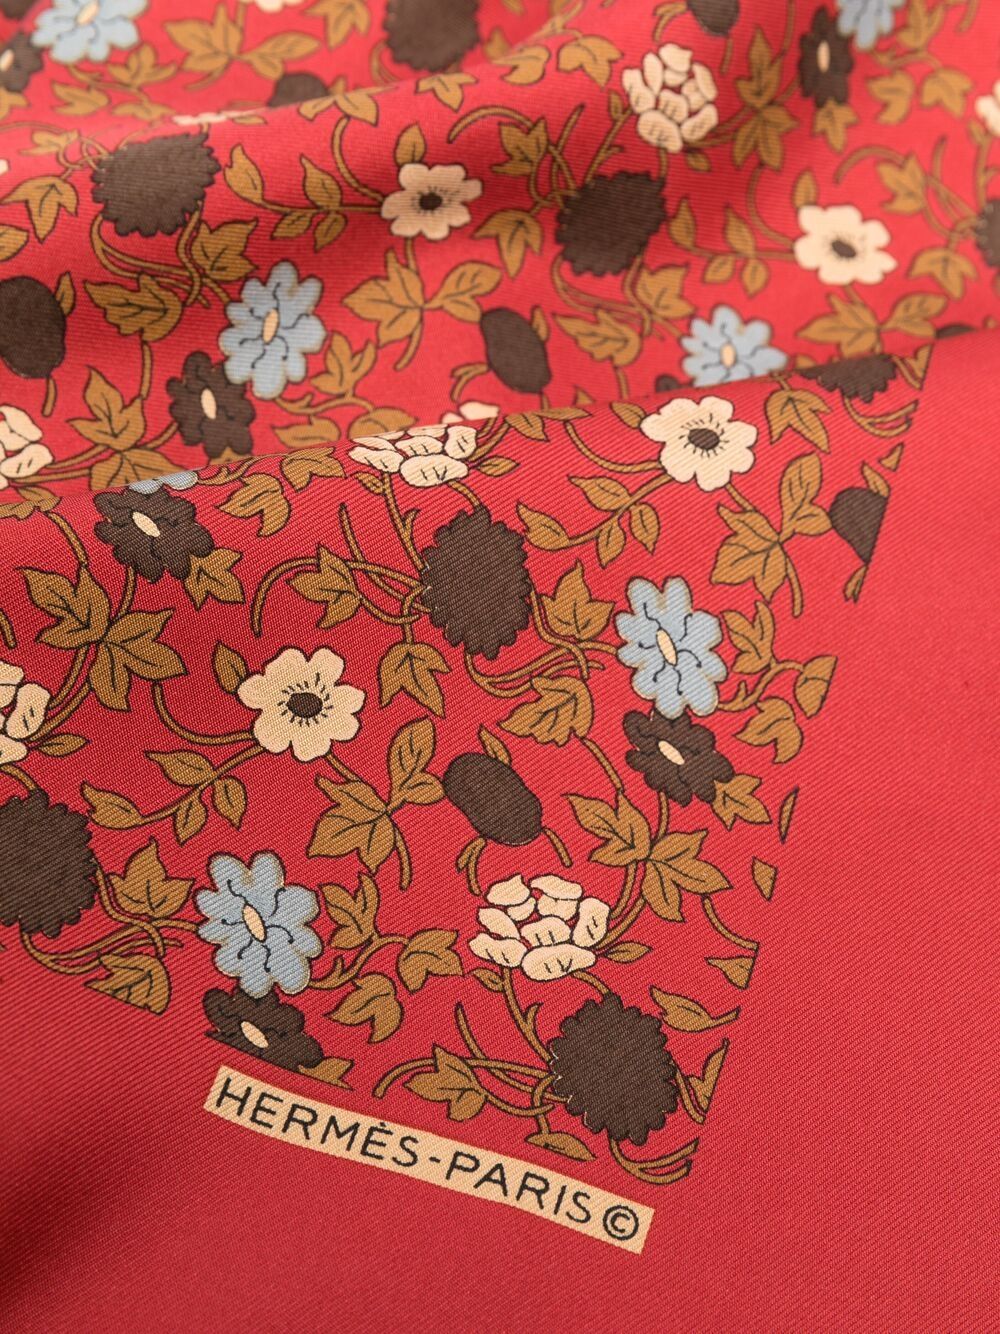 фото Hermès платок 2000-х годов с цветочным принтом